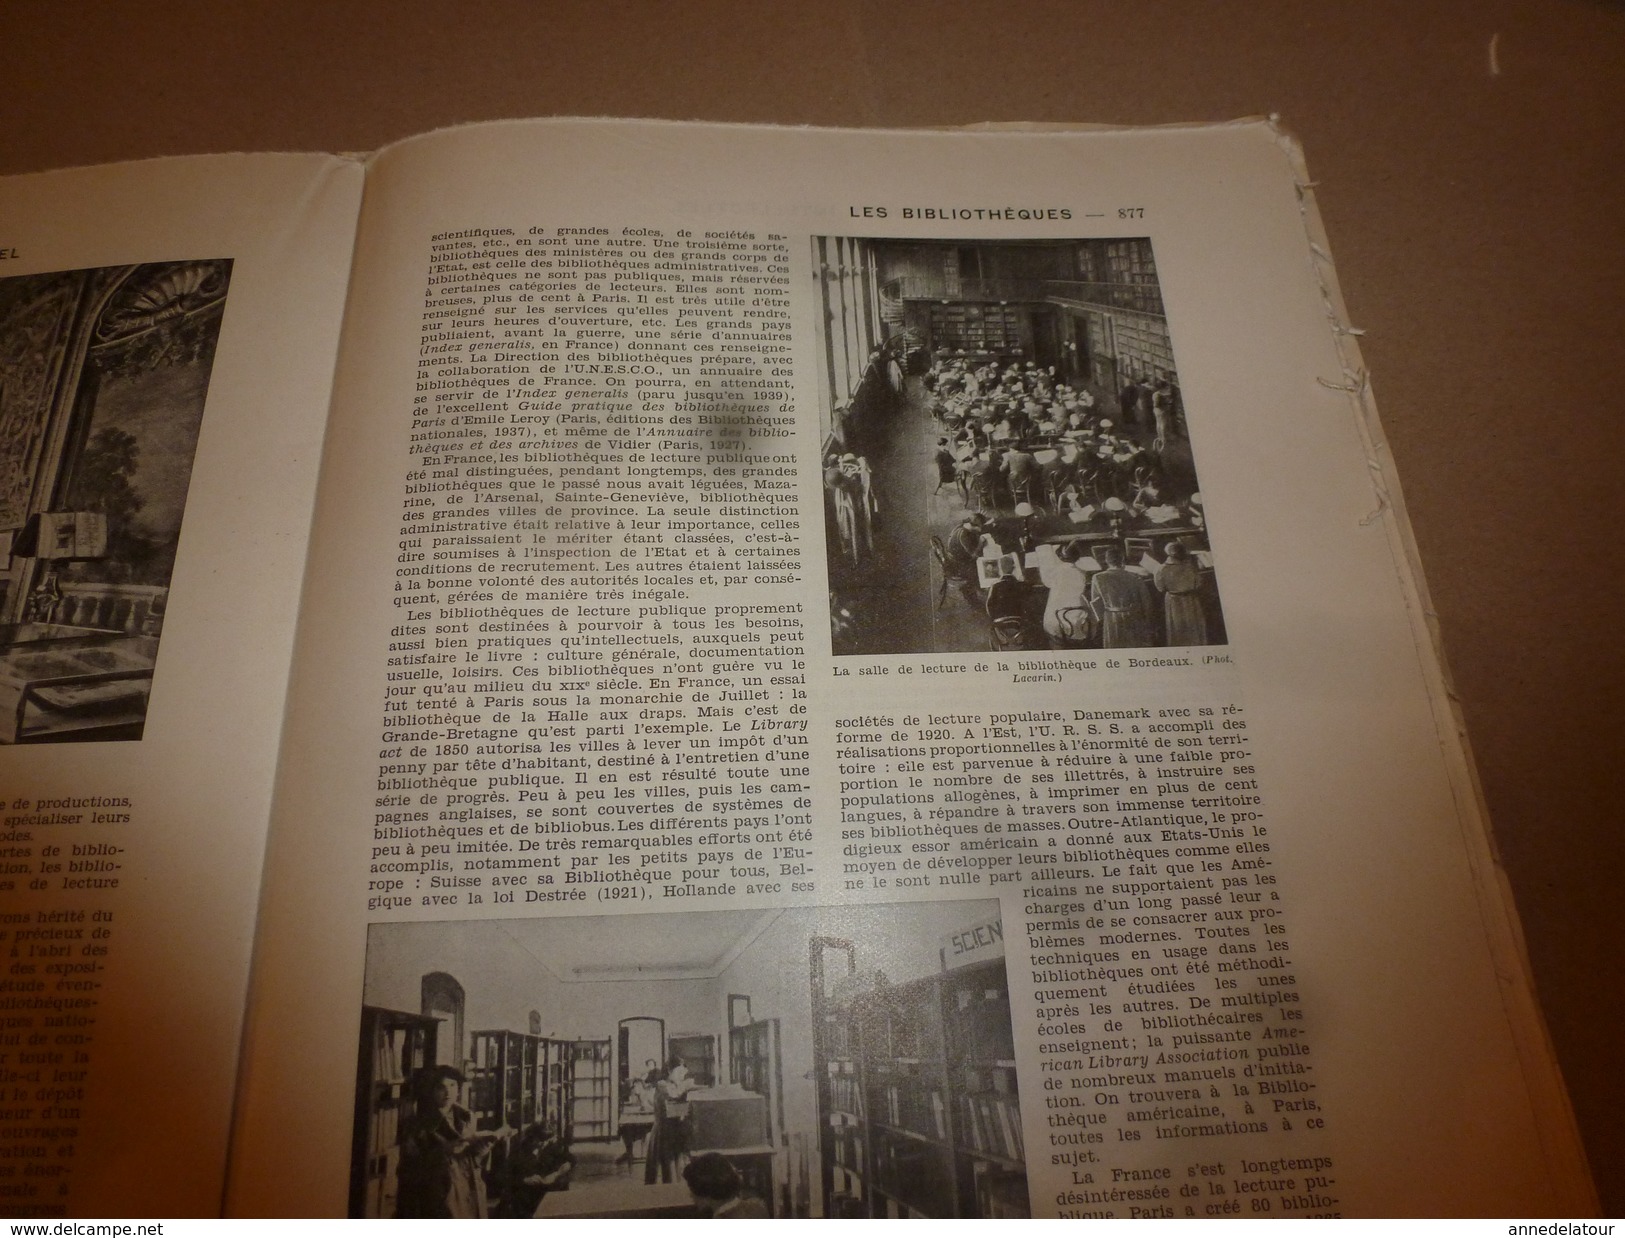 1950 ENCYCLOPEDIE FAMILIALE LAROUSSE ----->  La lecture,Les bibliothèques,Les musées,Le théâtre,Le cirque,Le cinéma